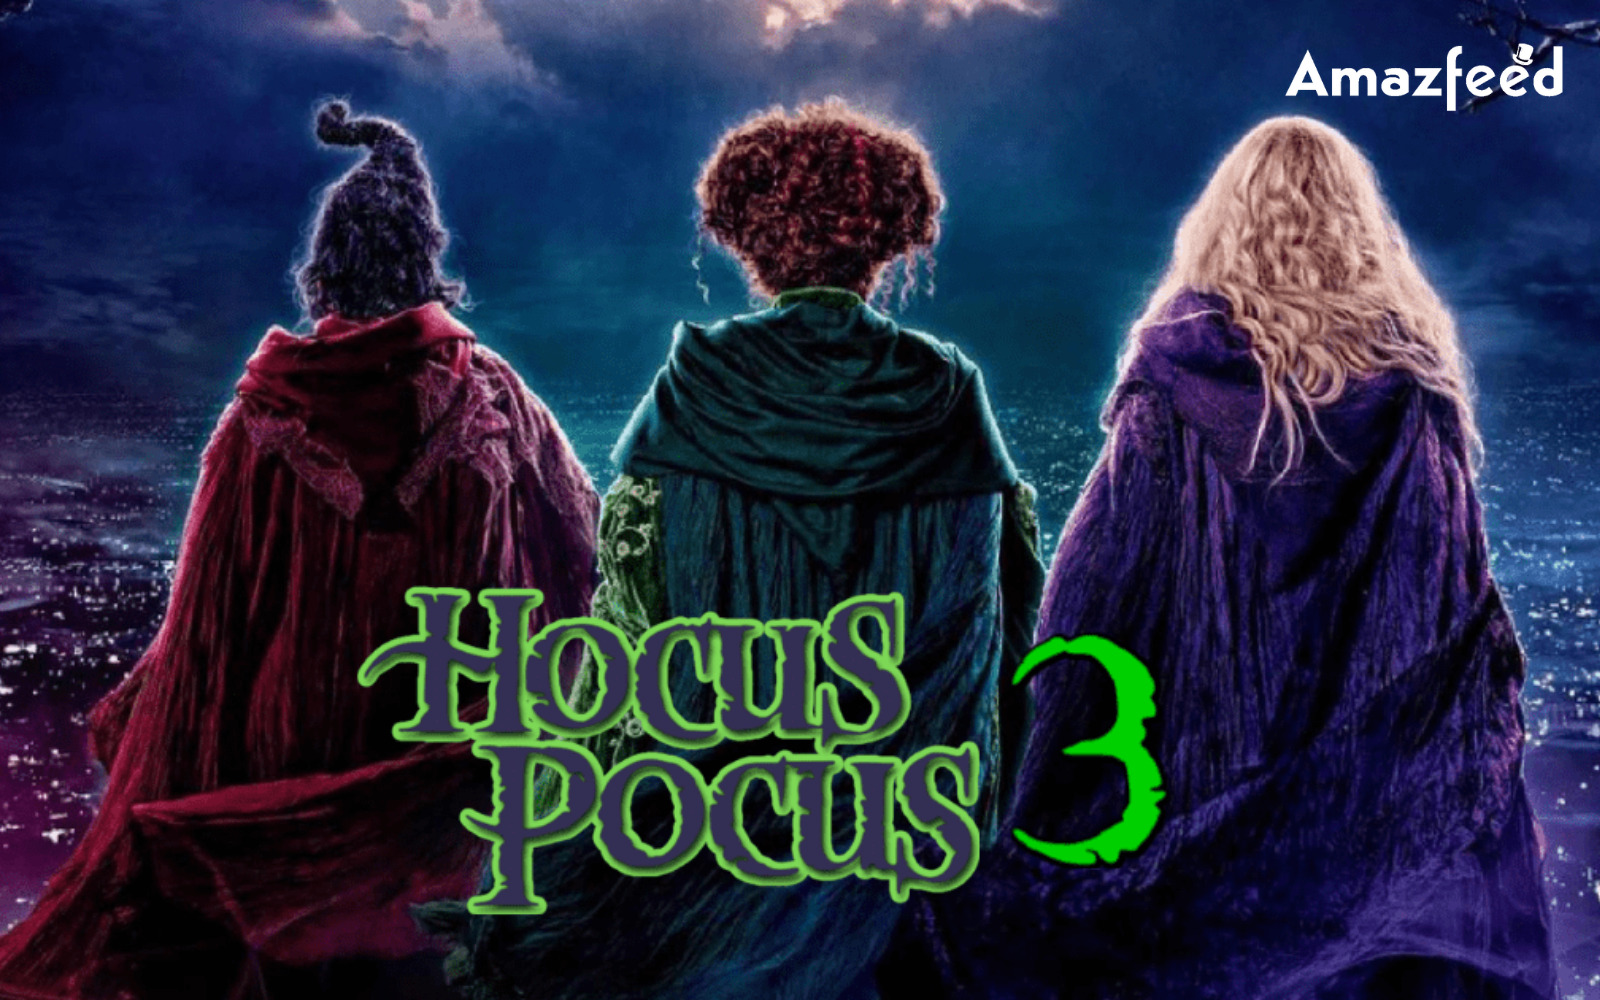 Hocus Pocus 3.1